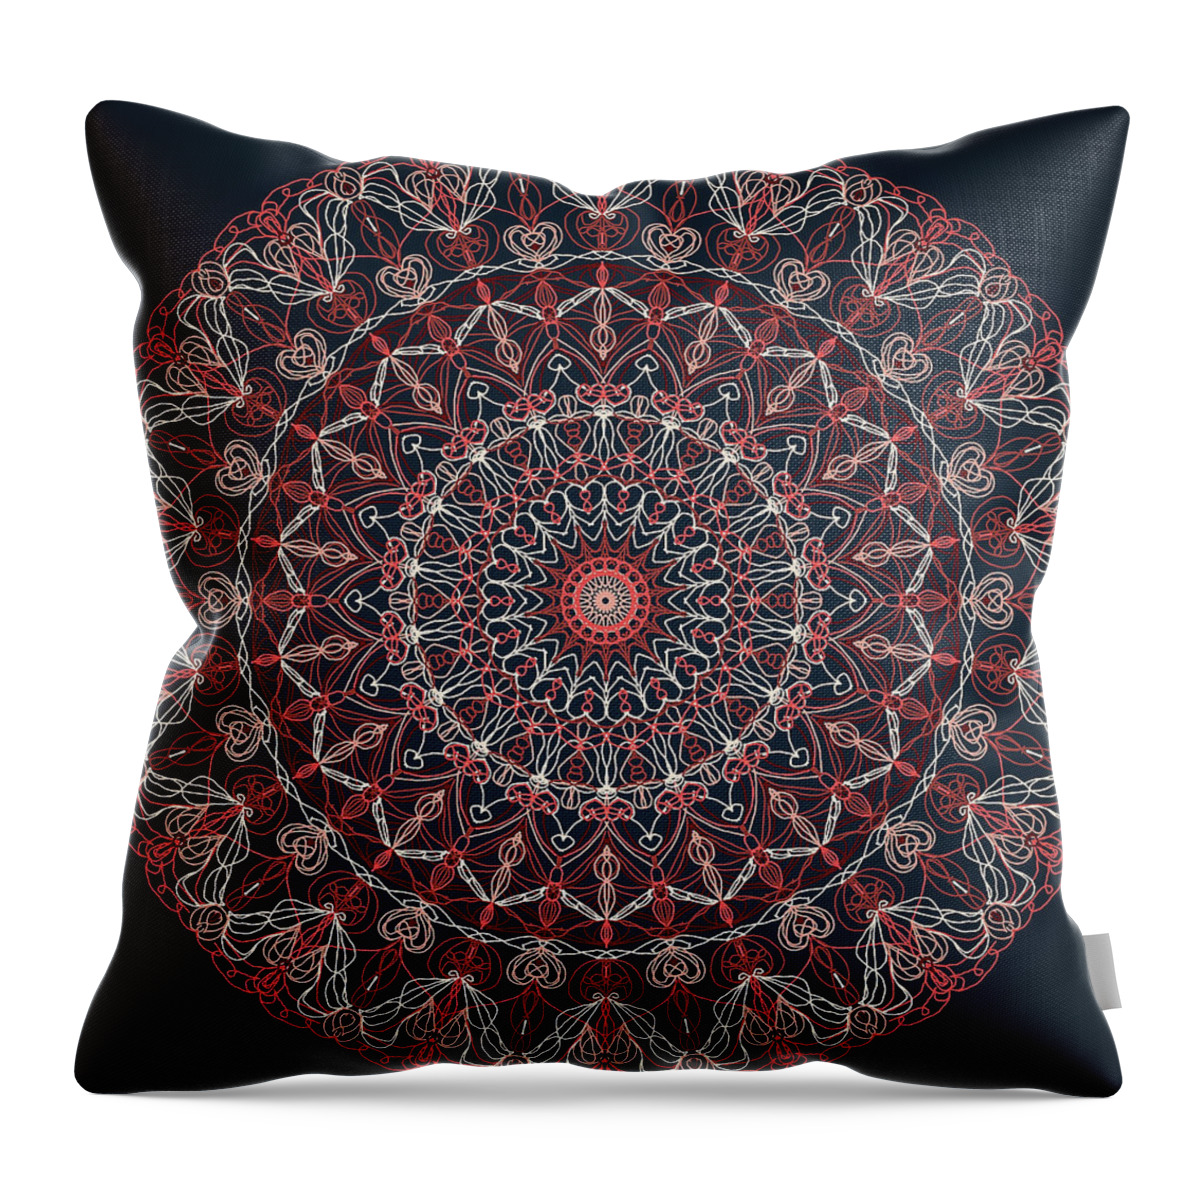 Mandala Throw Pillow featuring the digital art Mandala 1 by Ronda Broatch